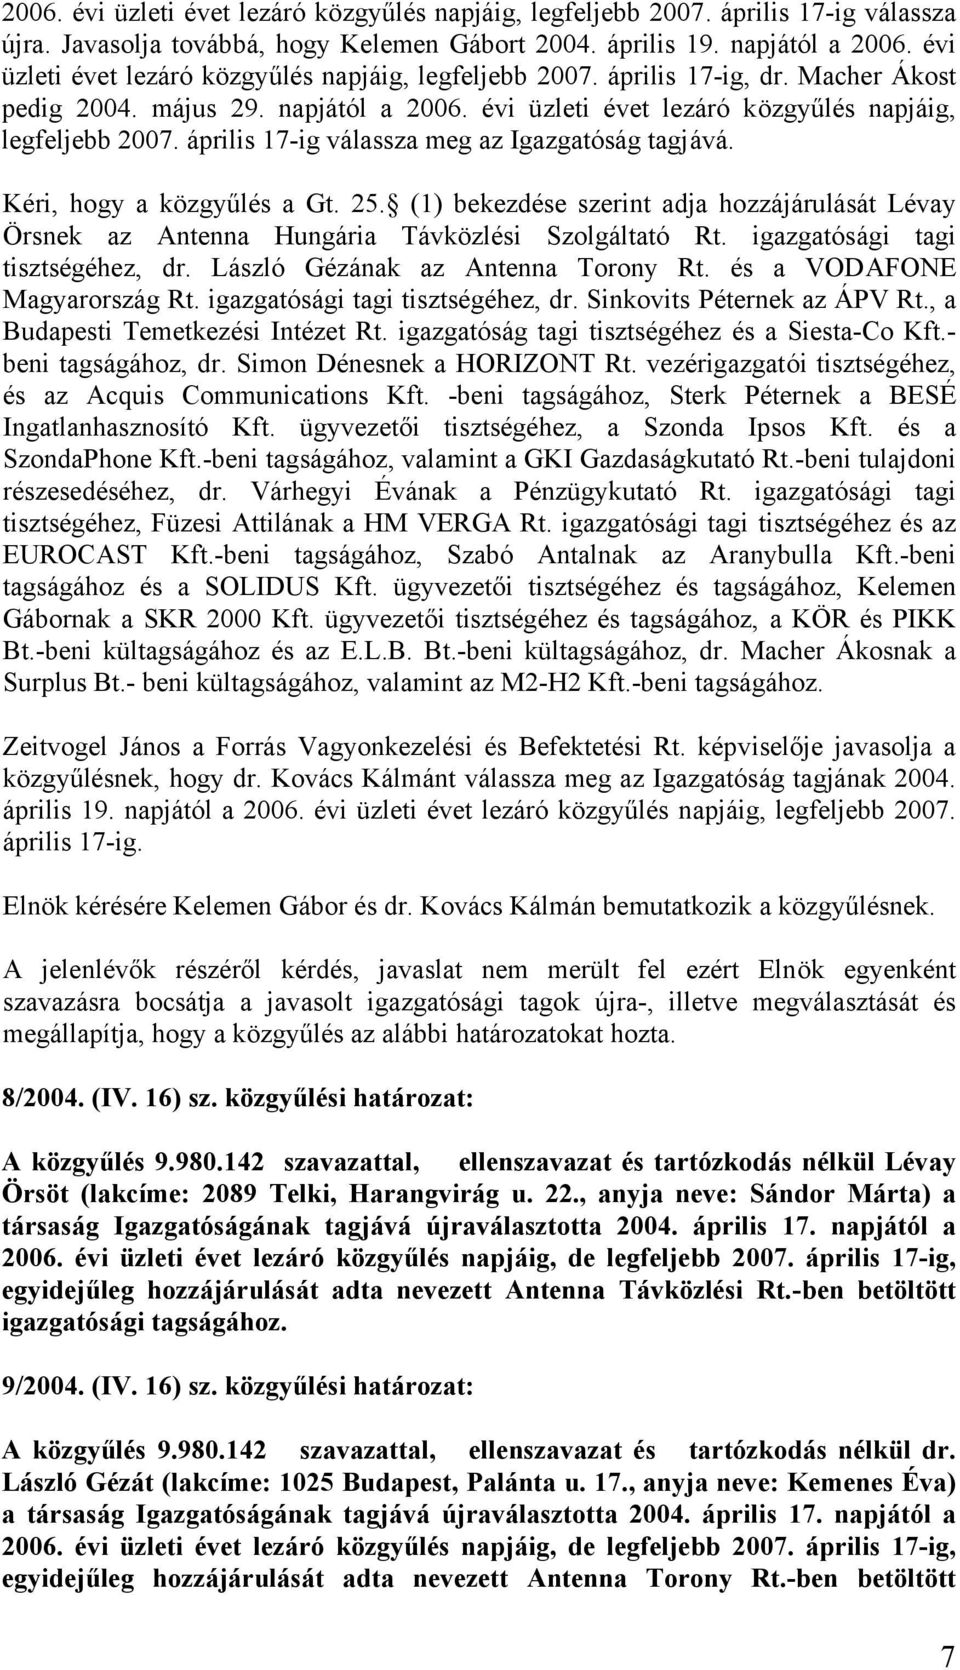 április 17-ig válassza meg az Igazgatóság tagjává. Kéri, hogy a közgyűlés a Gt. 25. (1) bekezdése szerint adja hozzájárulását Lévay Örsnek az Antenna Hungária Távközlési Szolgáltató Rt.